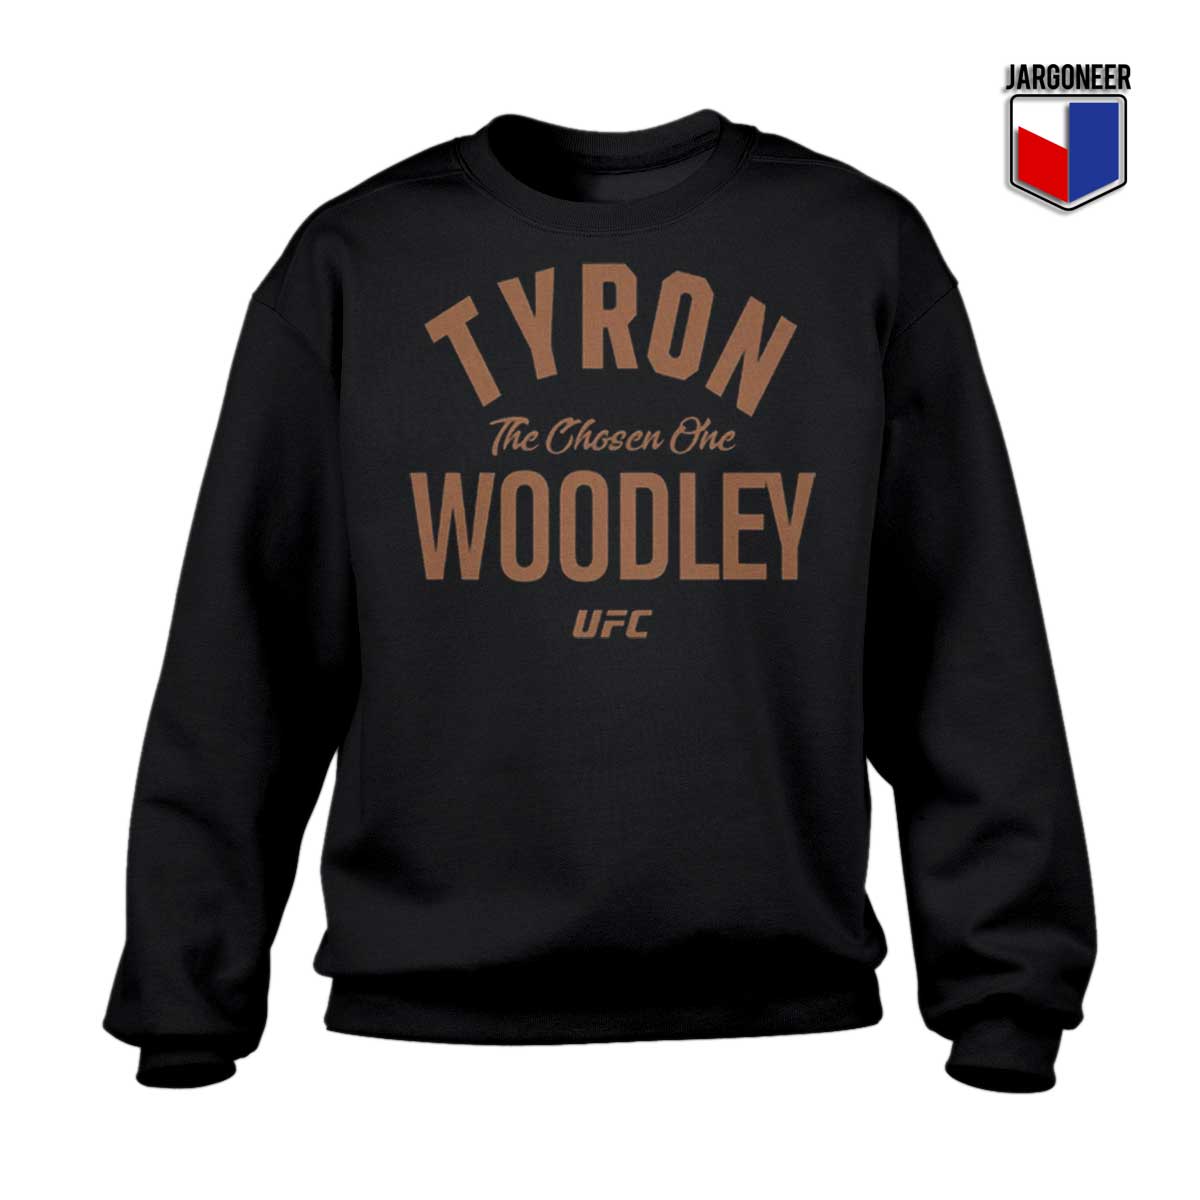 Tyron Woodley UFC Sweatshirt - Shop Unique Graphic Cool Shirt Designs